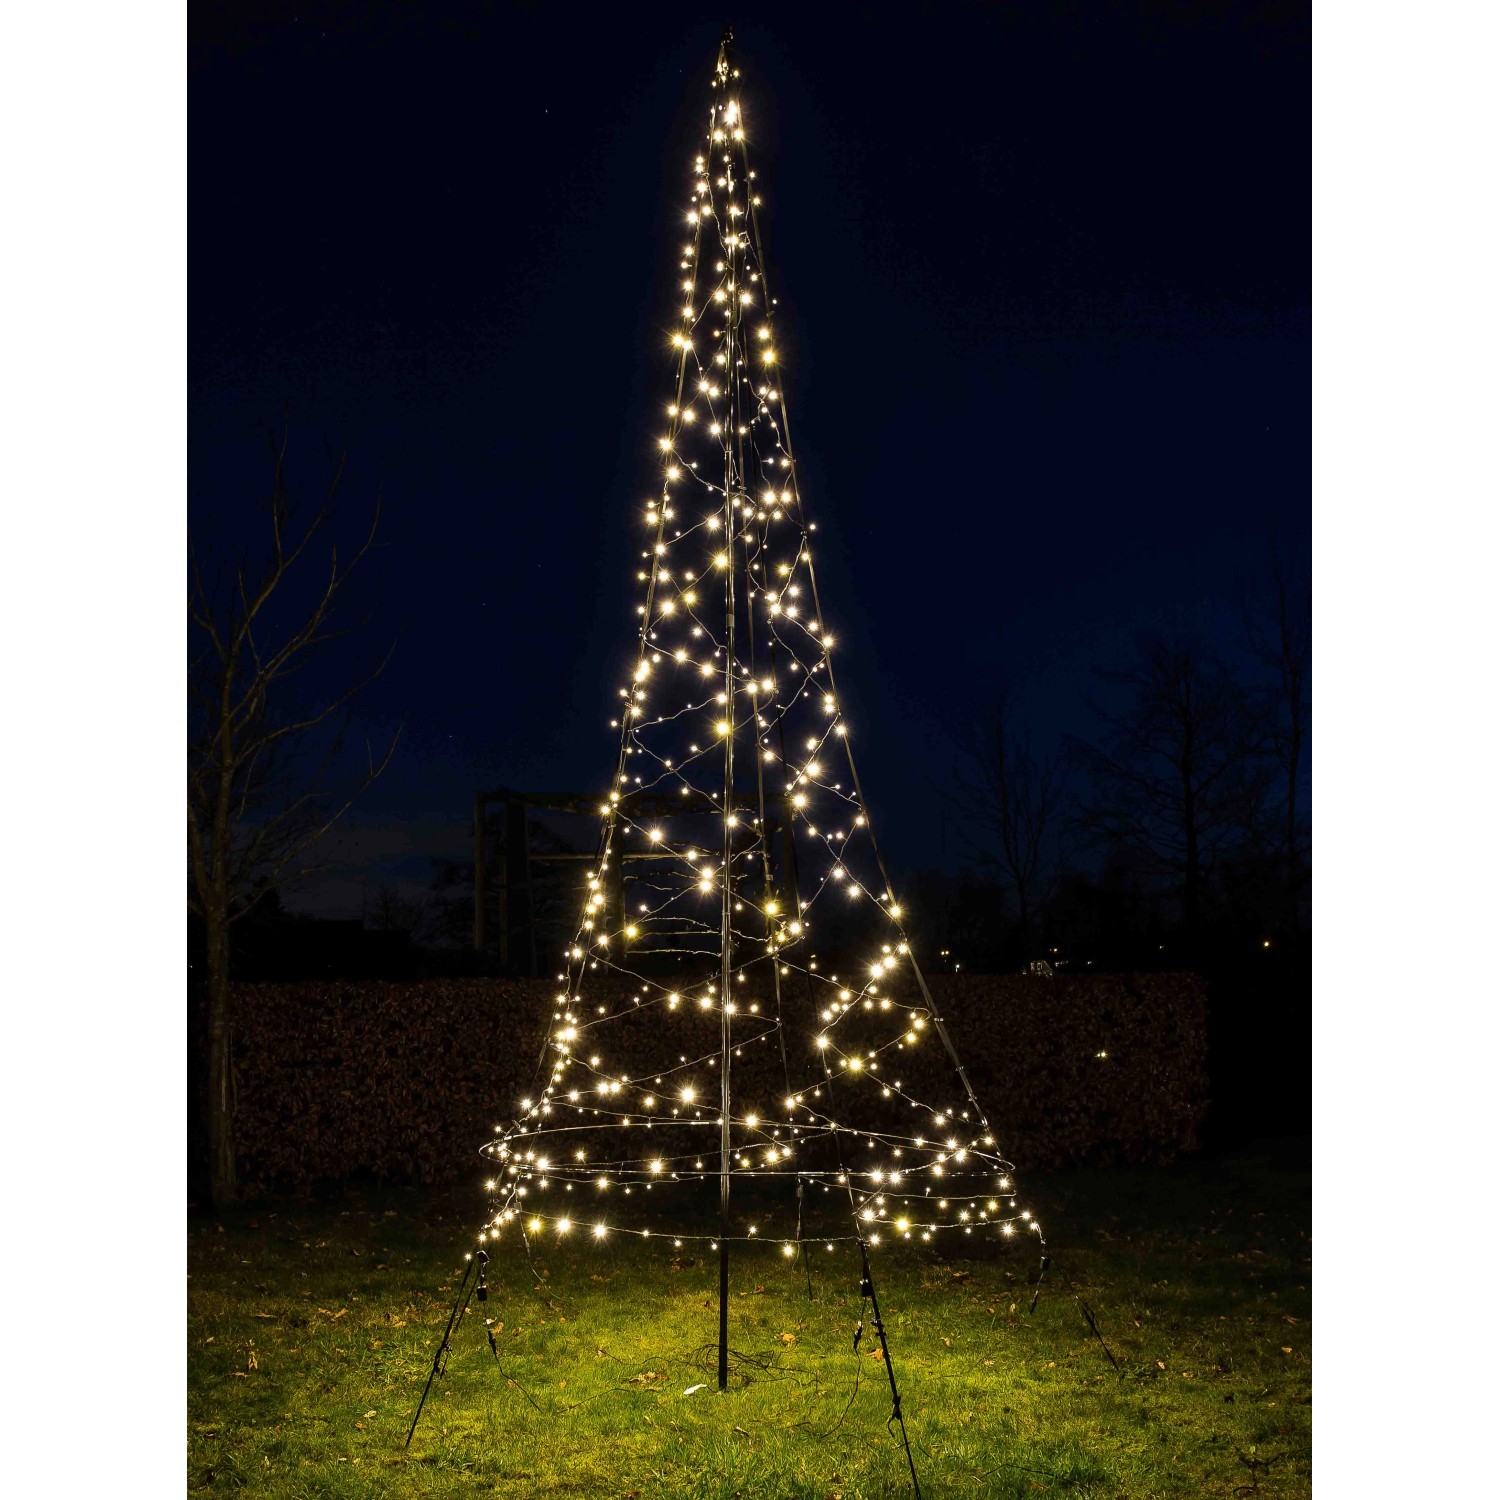 Fairybell 3D LED-Lichterbaum inkl. Mast für Außen 300 LED 3 m kaufen bei OBI